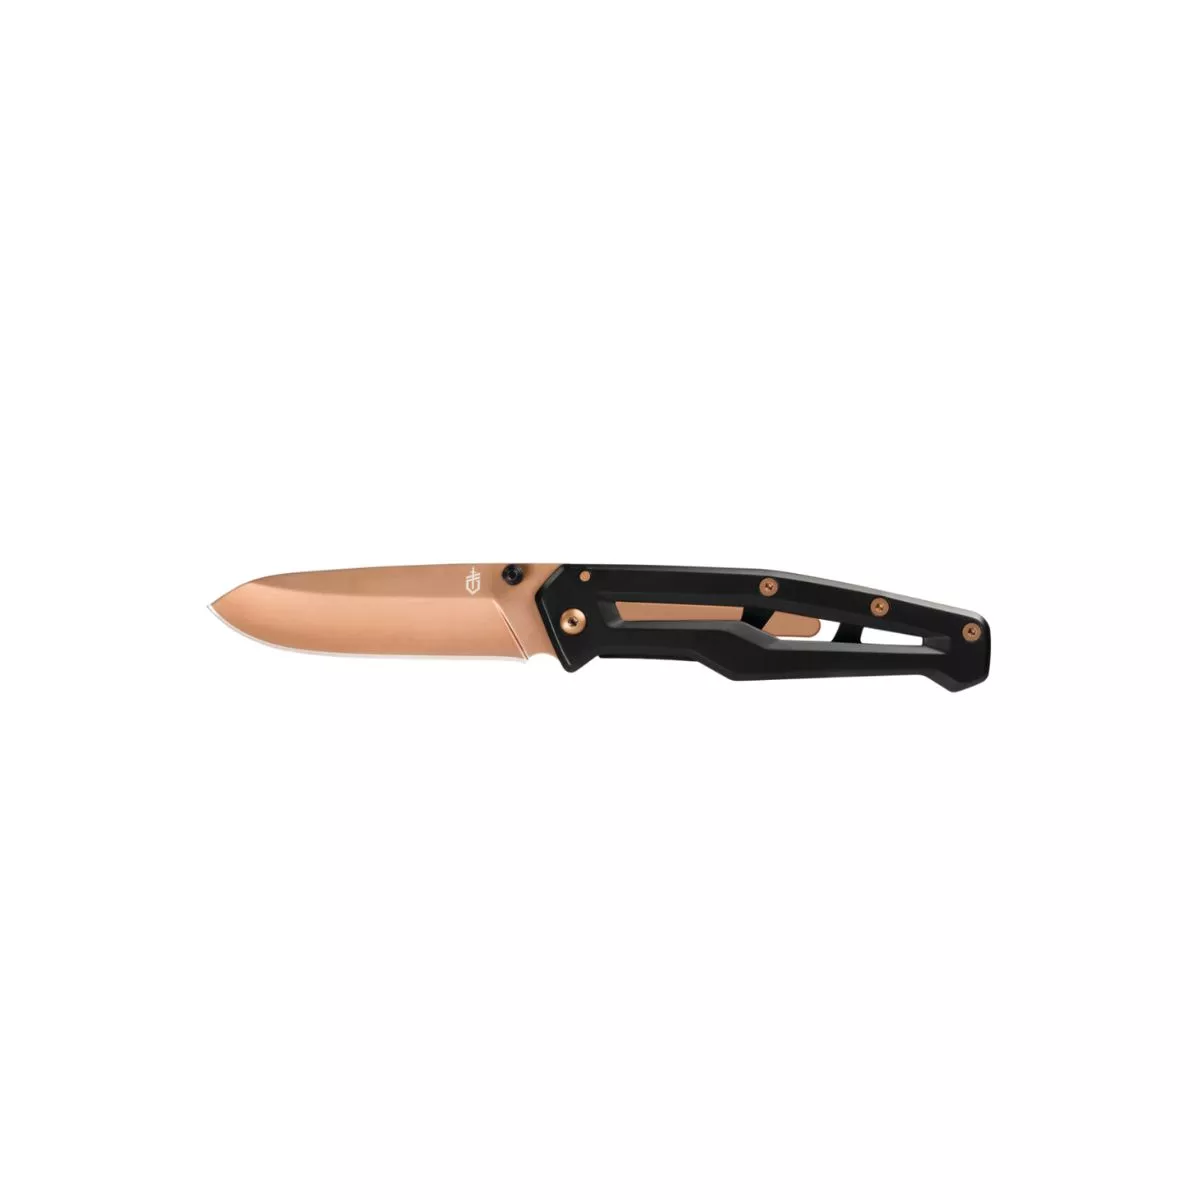 Cuțit pliabil de buzunar Gerber cu tăiș fin și clemă de buzunar, lungime lamă7,6 cm, Cuțit pliabil Paralite, negru/roz roz, 31-003691 1